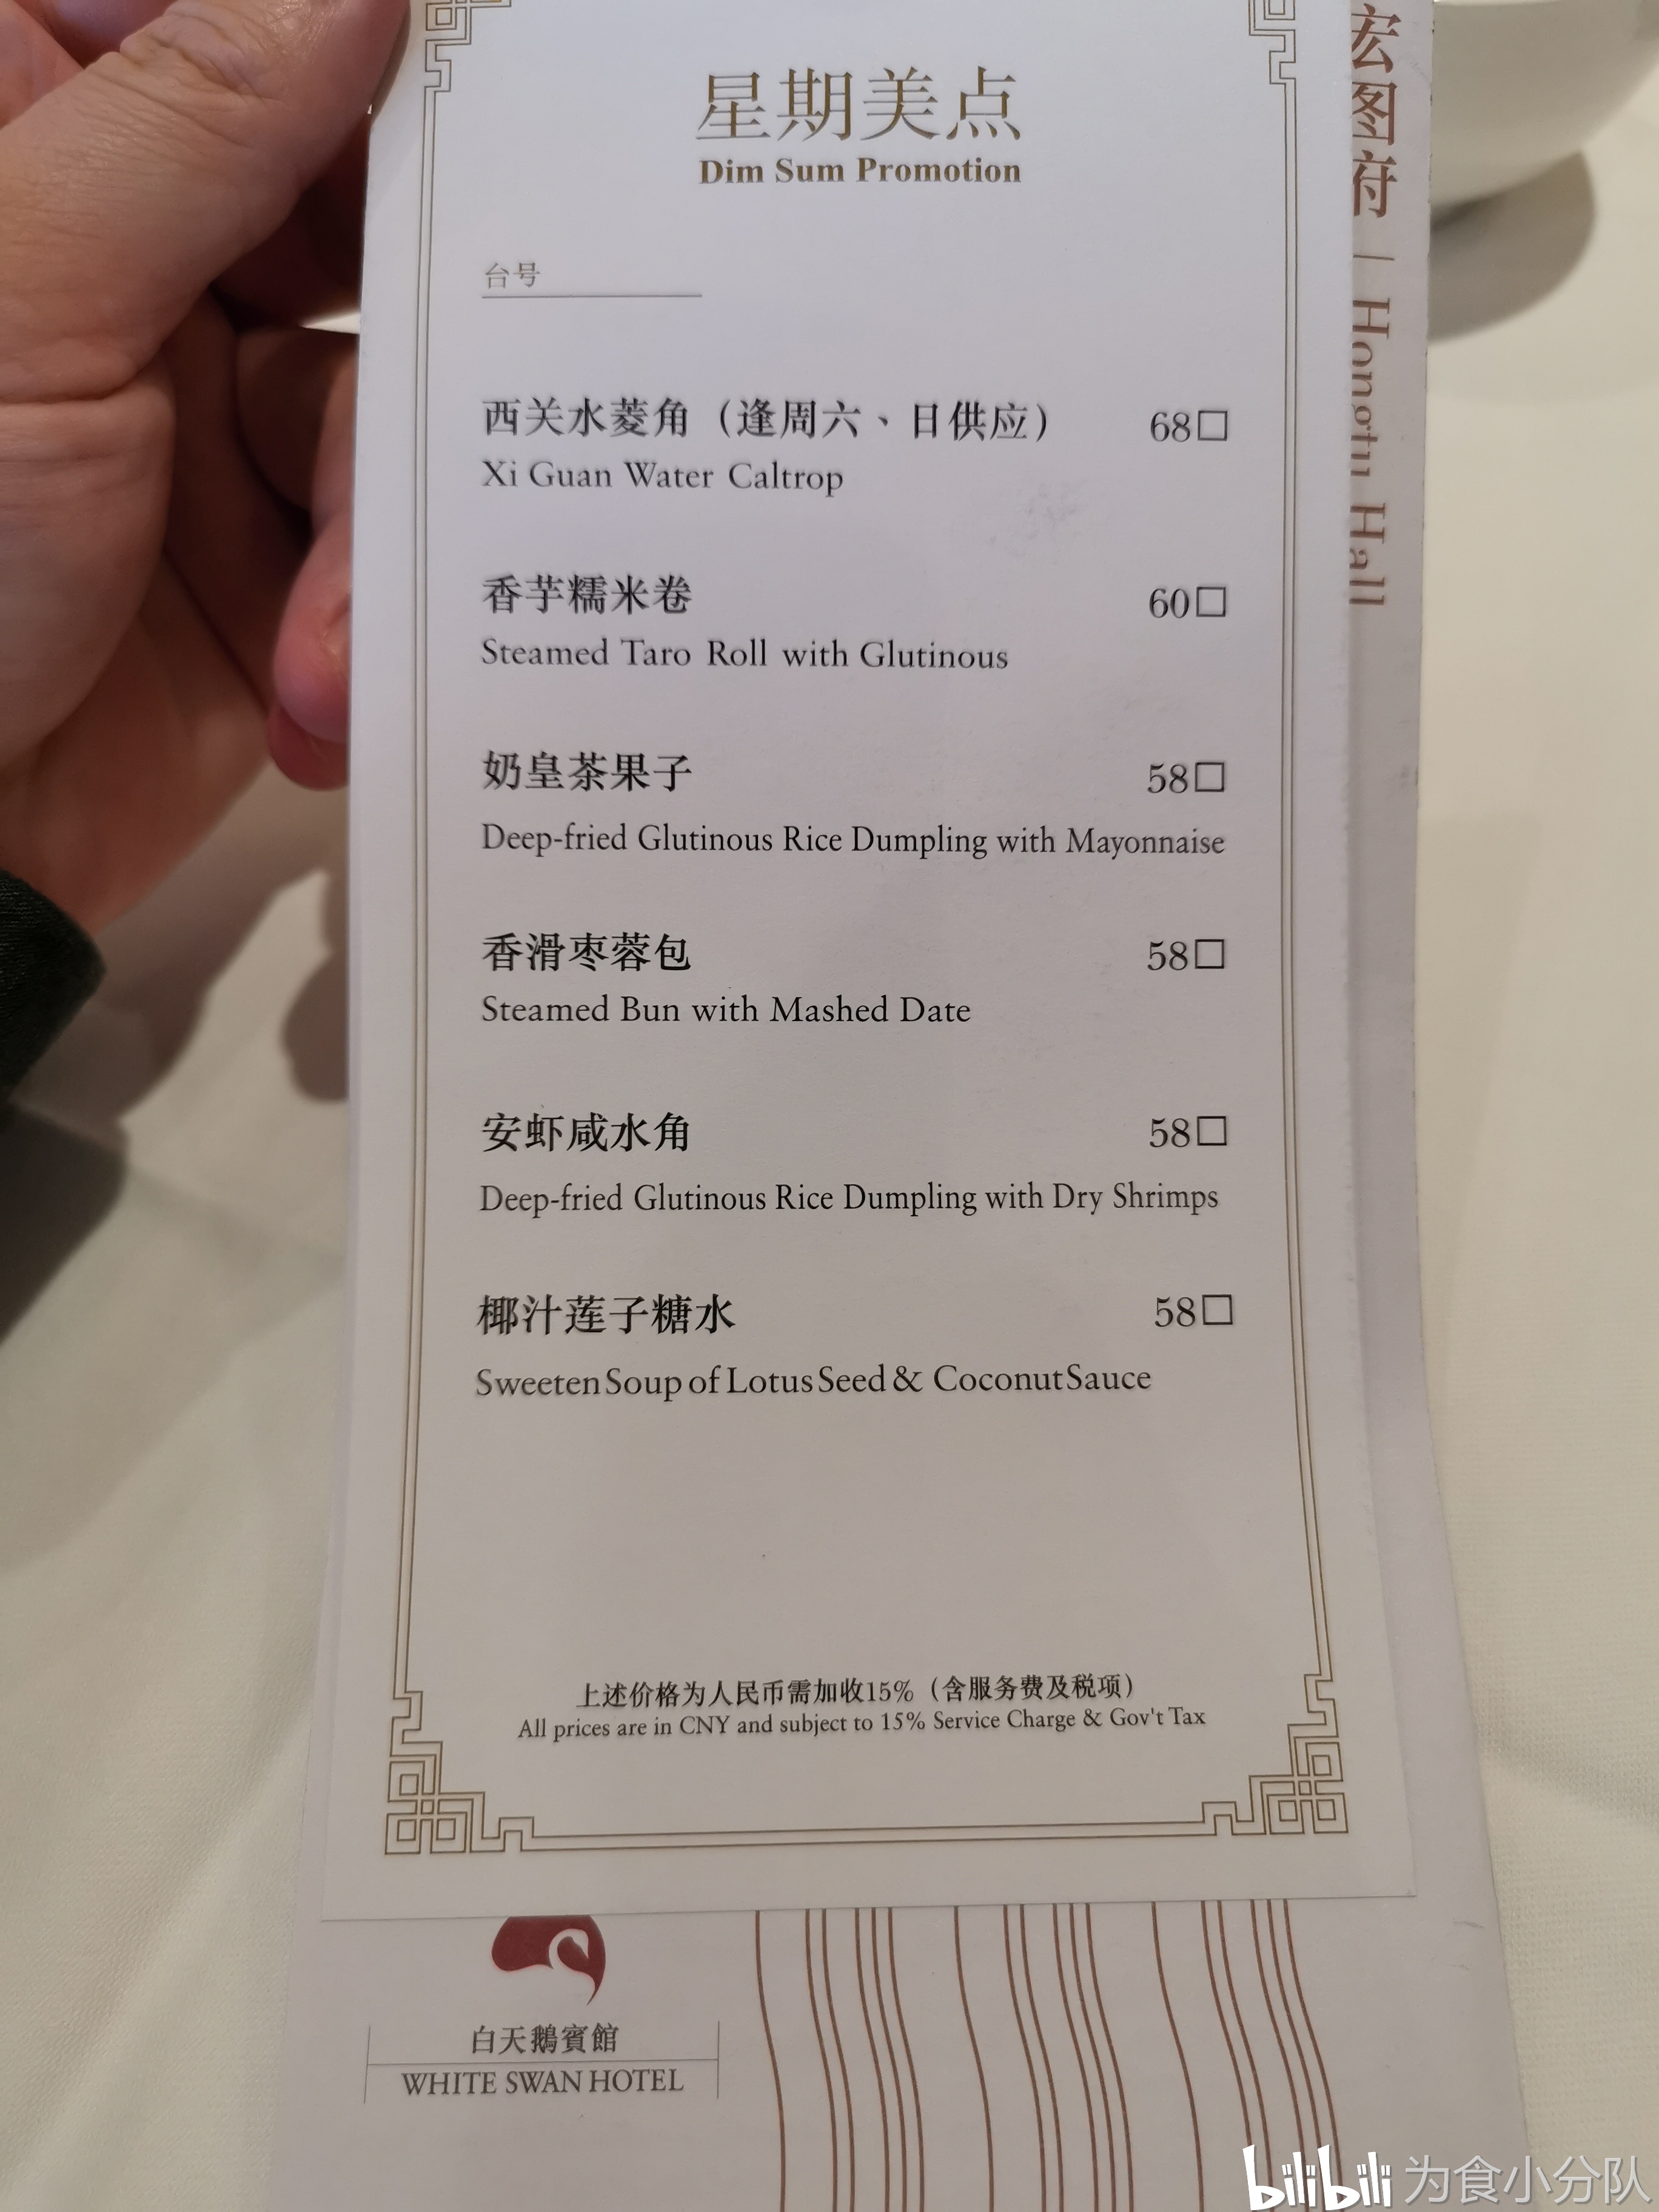 广州特色早茶体验系列,篇二:我心目中的广州第一早茶餐厅—白天鹅宾馆